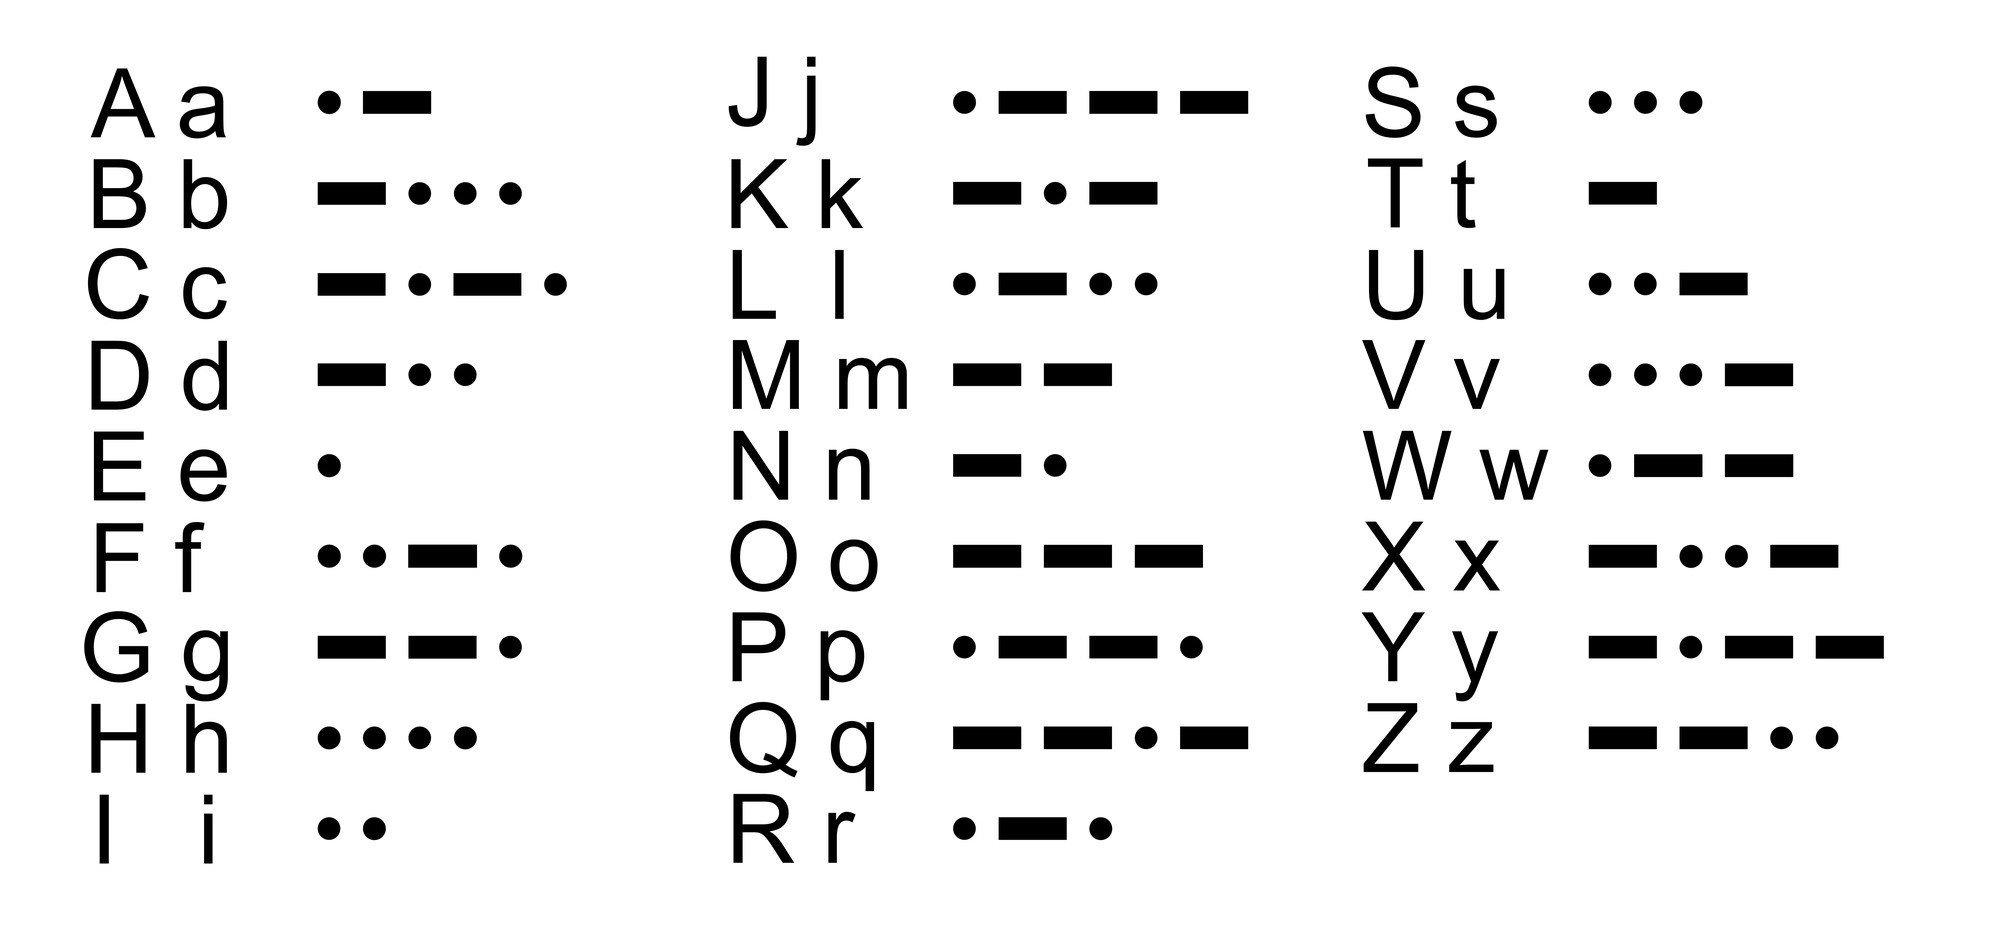 printable-morse-code-key